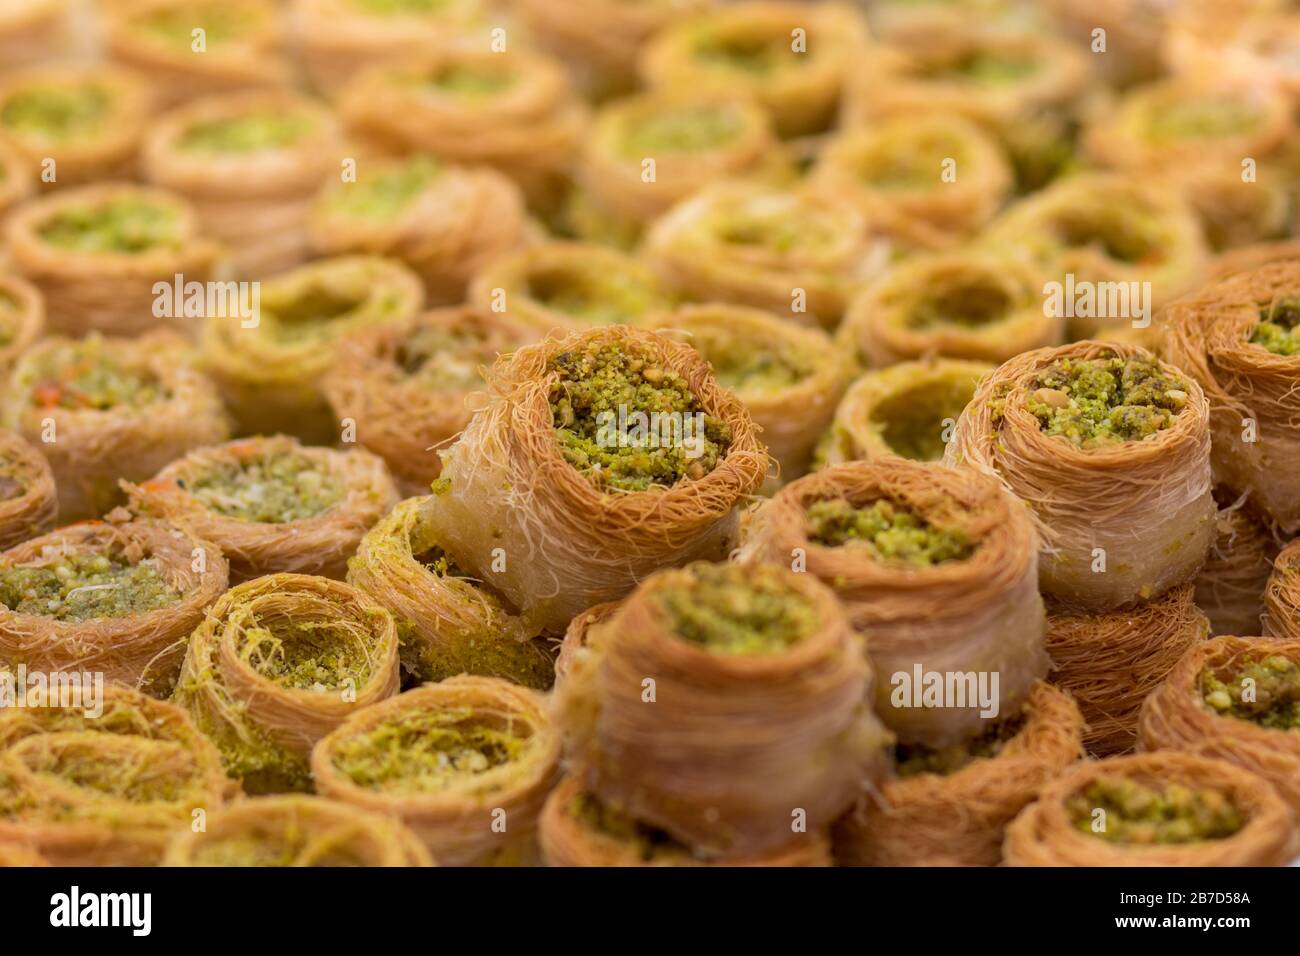 Baklawa (baklawa) pâte arabe traditionnelle et authentique du Moyen-Orient, fils de pâte frits, miel, sous la forme d'une place ouverte. Farcie de poing Banque D'Images